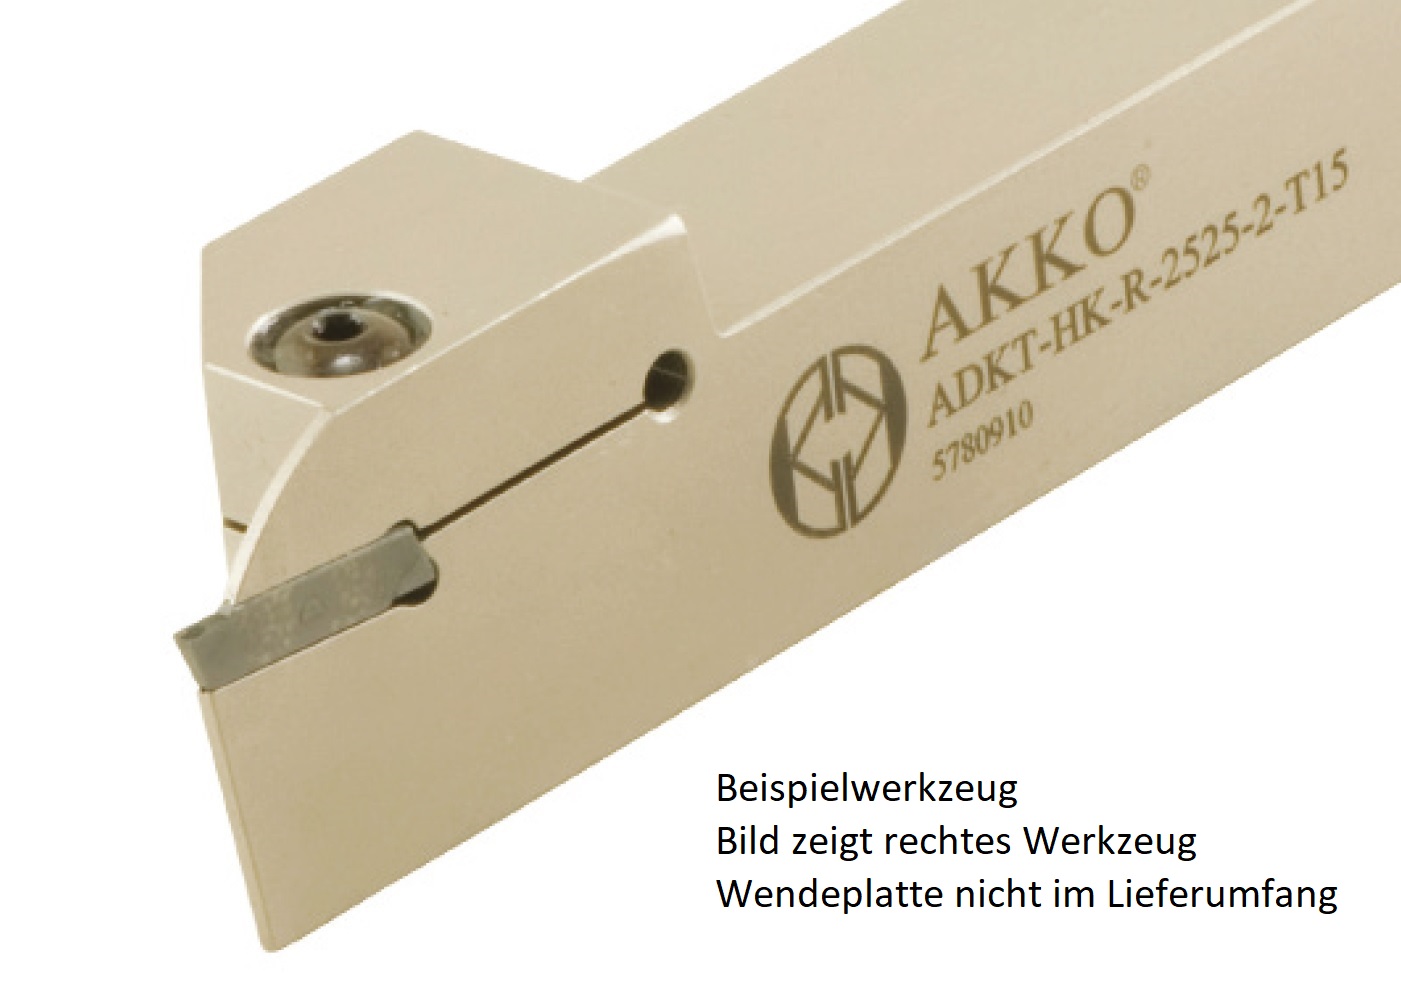 Abstechhalter ADKT-HK-R-2525-2-T15